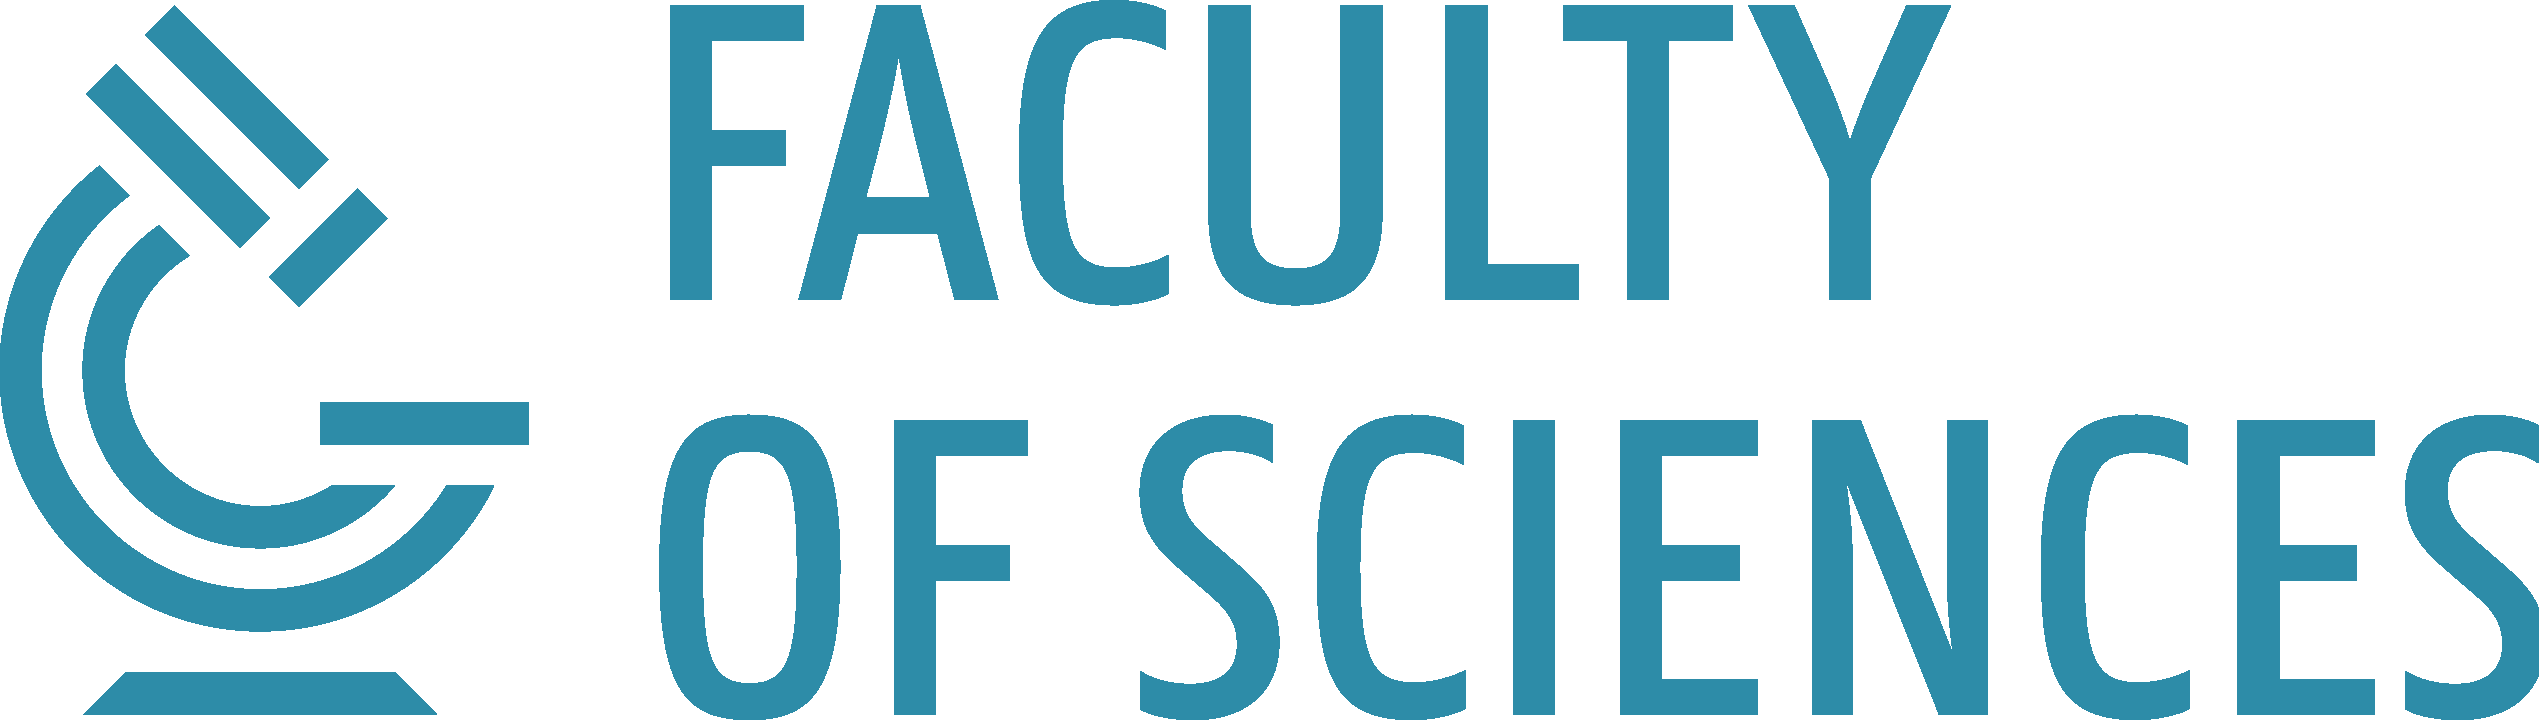 [Logo Faculty of Sciences]